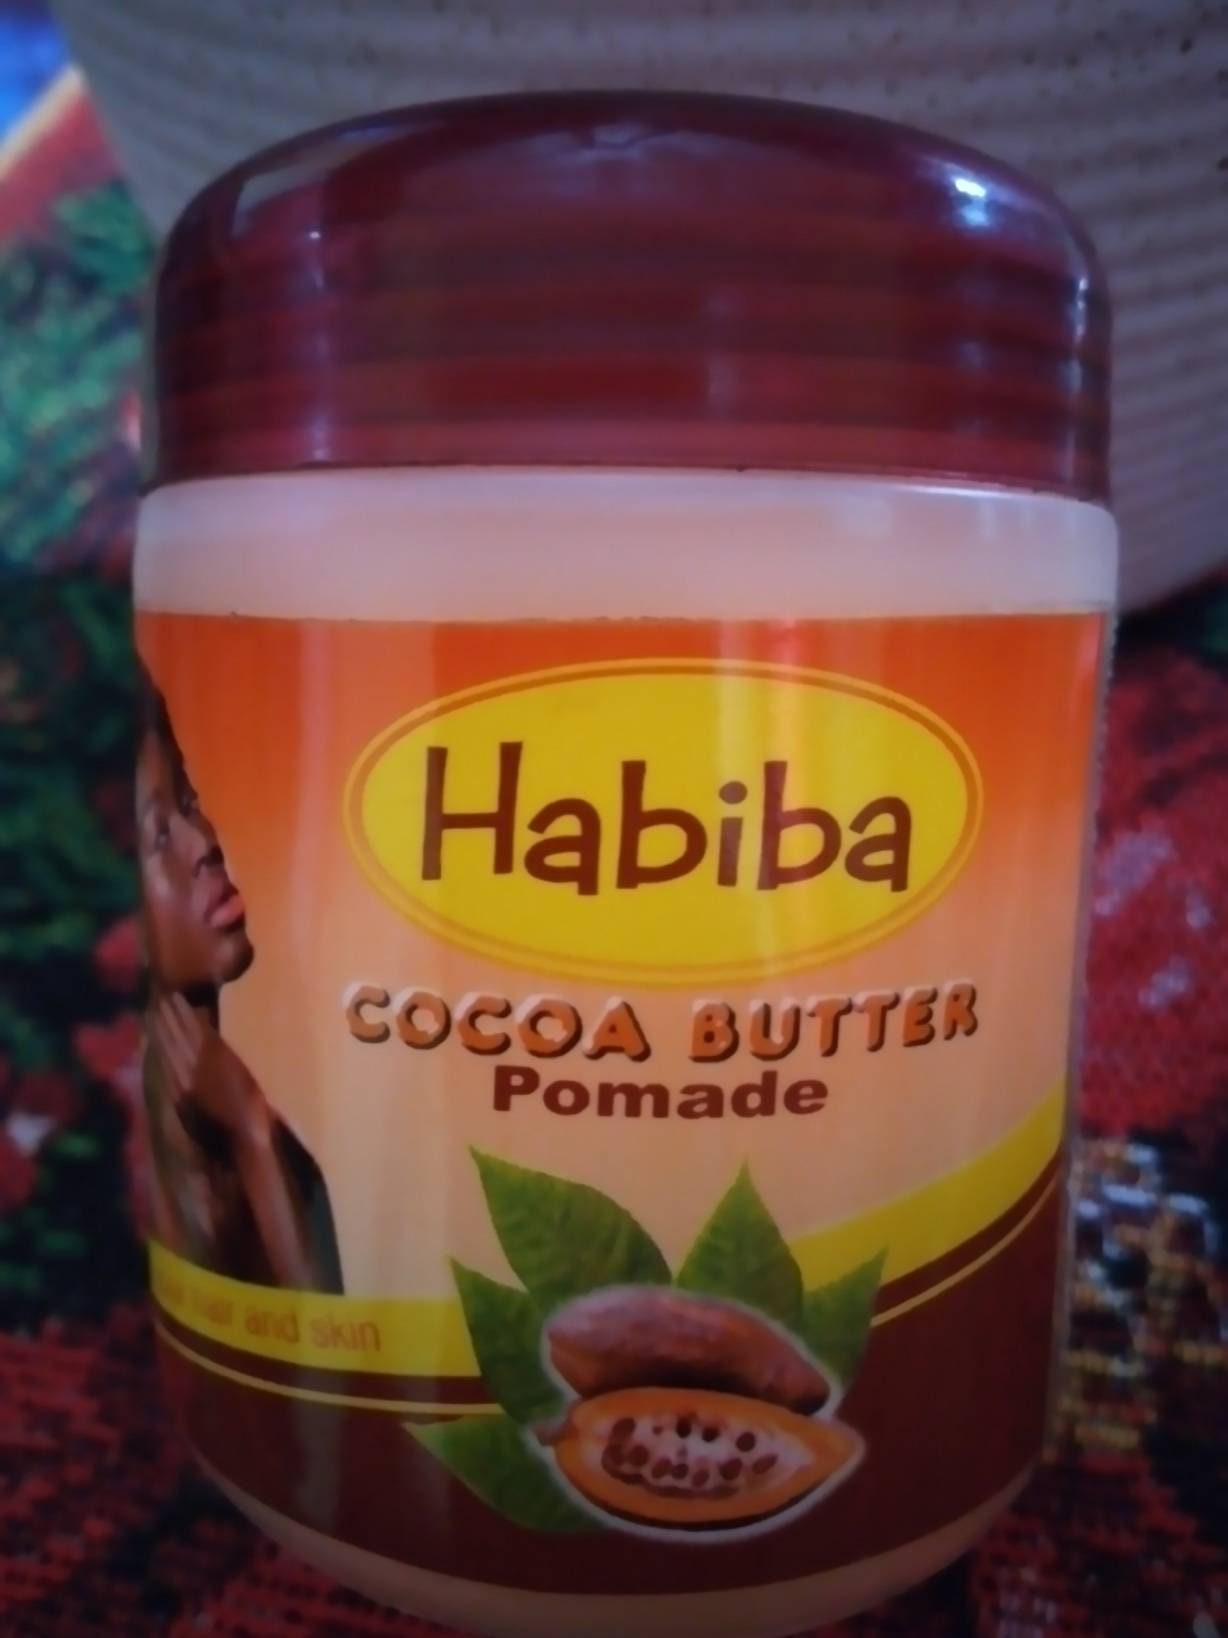 Habiba Cocoa Skin Hair Pommade Cocoa Butter - Etsy